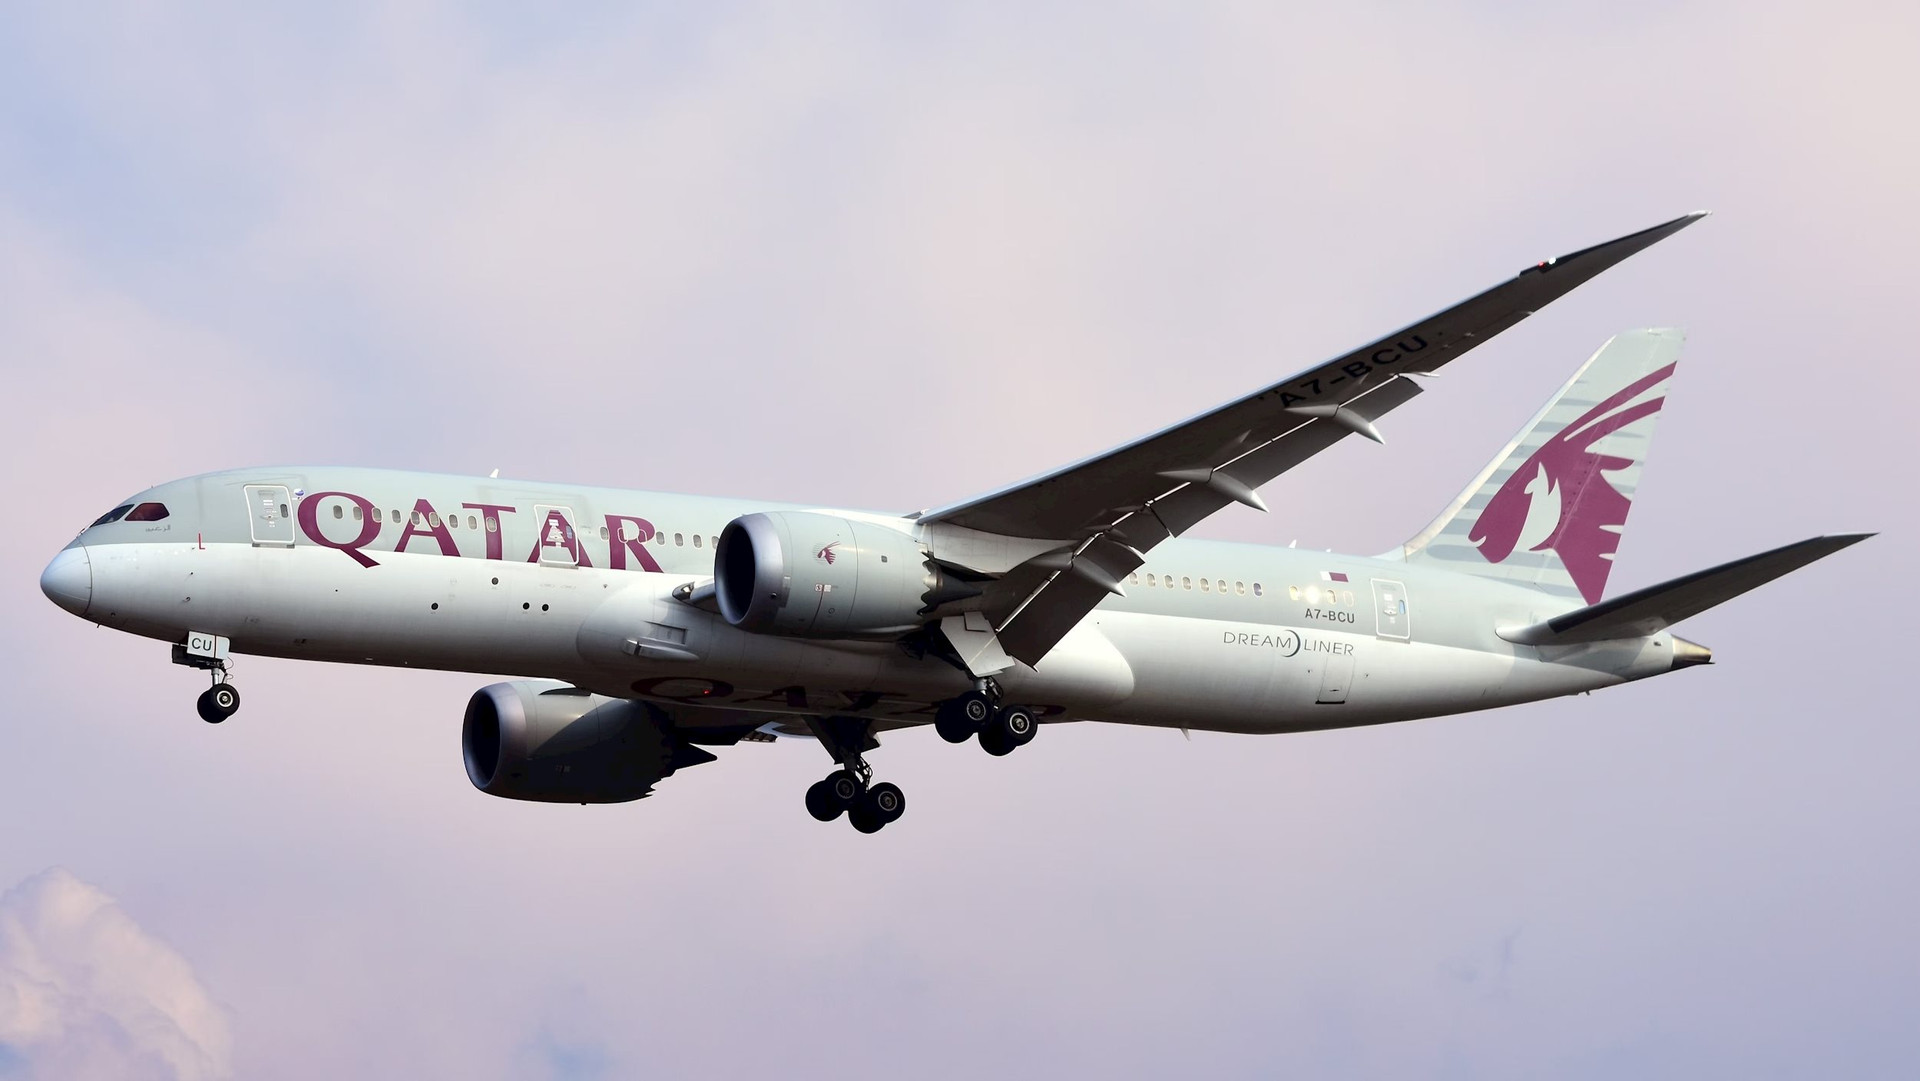 Qatar Airways được thành lập vào năm 1993. Đây là một trong những hãng hàng không quốc tế trẻ nhất phục vụ chuyến bay đến và đi tới cả 6 lục địa, kết nối hơn 160 điểm đến trên thế giới mỗi ngày. Hãng có trụ sở tại Doha (Qatar), có đường bay đến tất cả các châu lục trên thế giới (trừ Nam Cực). Hãng có chuyến bay thẳng dài thứ hai thế giới từ Doha (Qatar) đến Auckland (New Zealand), vốn dĩ đây là đường bay dài nhất cho đến khi có chuyến bay của Singapore Airlines (Singapore) đến thành phố New York